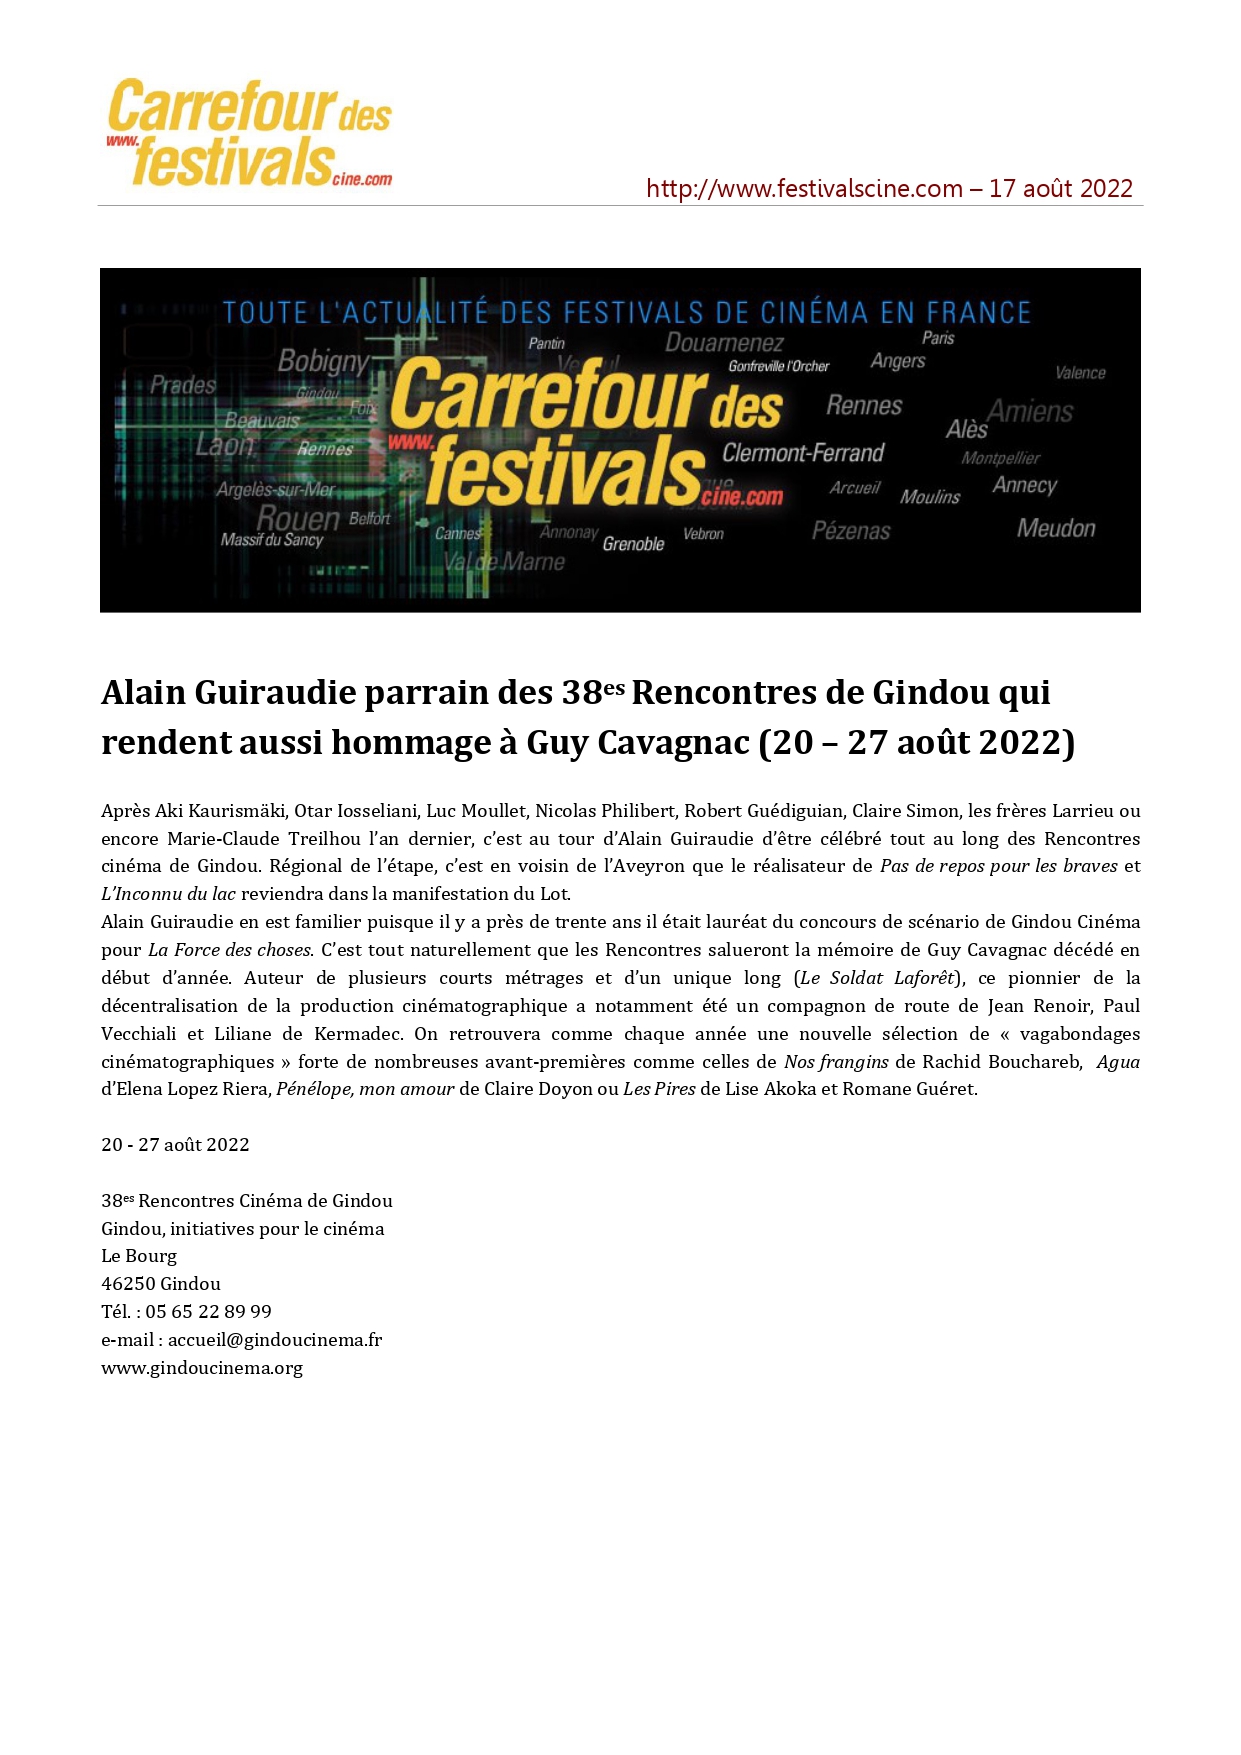 Carrefour des festivals